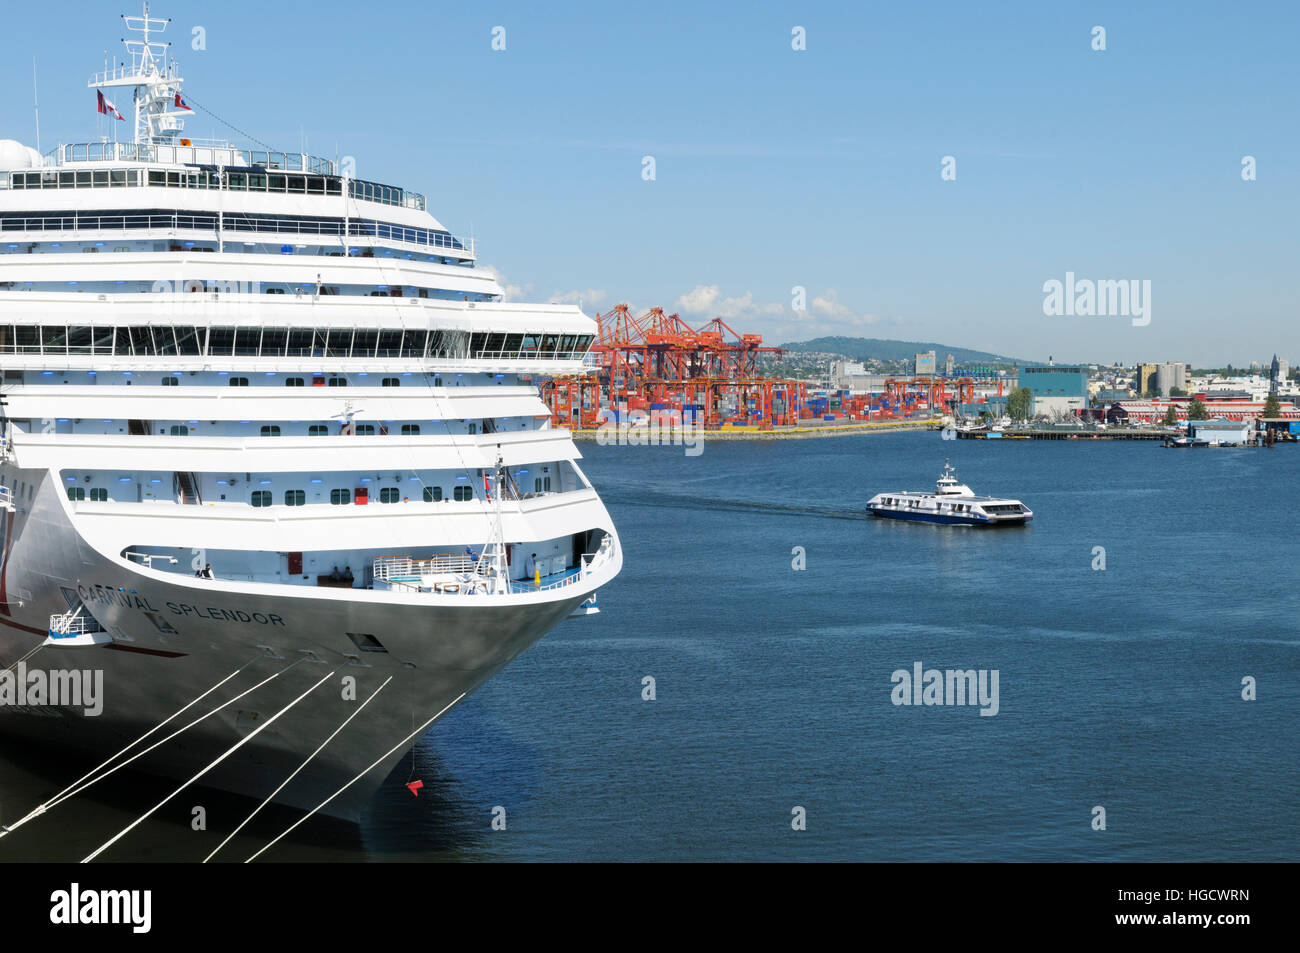 Carnival Splendor crucero amarrados en Canada Place, la terminal de cruceros, el puerto de Vancouver, British Columbia, Canadá Foto de stock